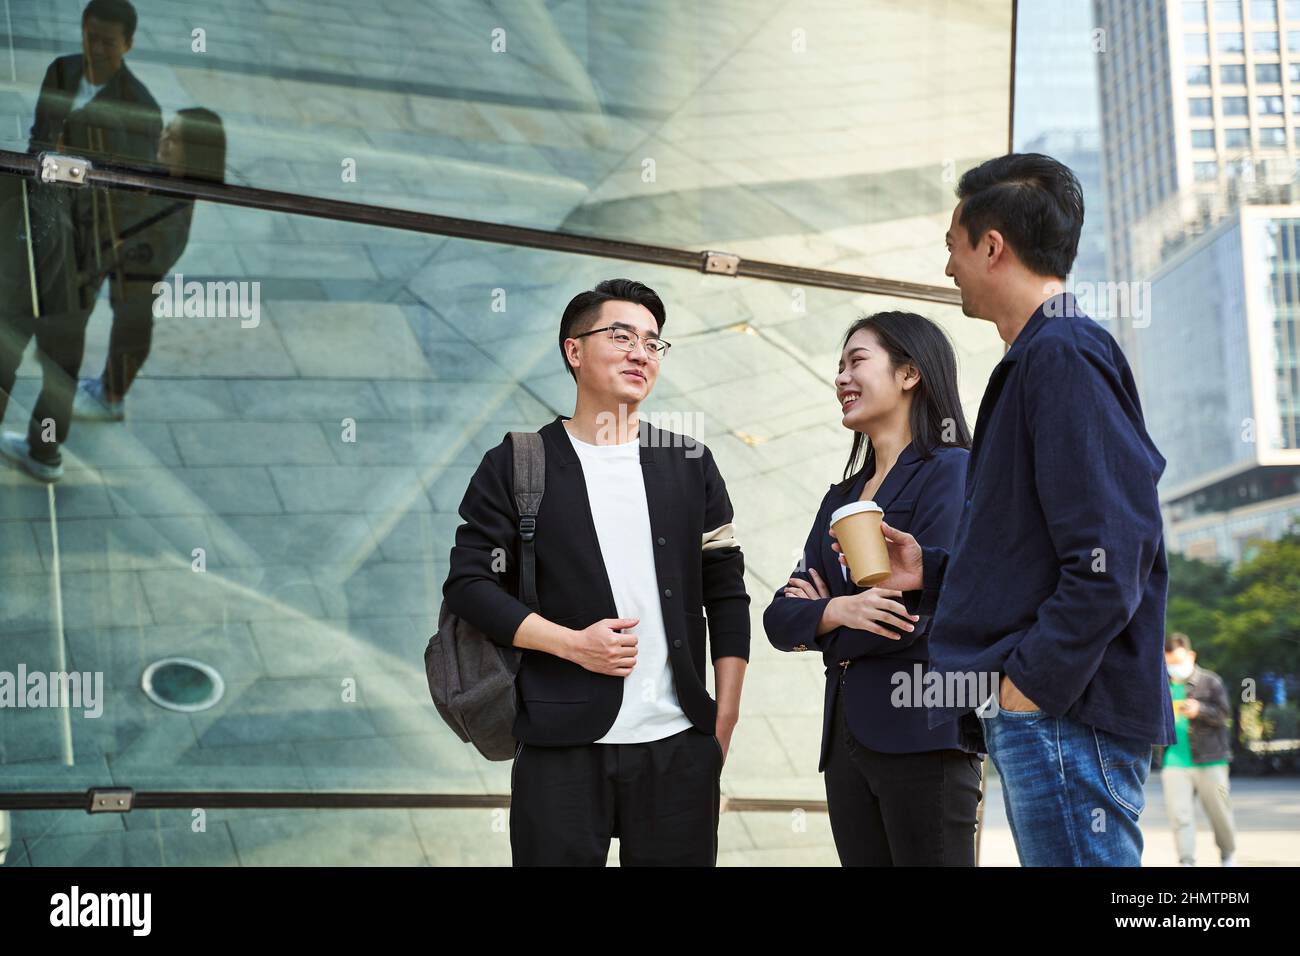 Junge asiatische Menschen stehen auf der Straße und sprechen glücklich und lächelnd Stockfoto